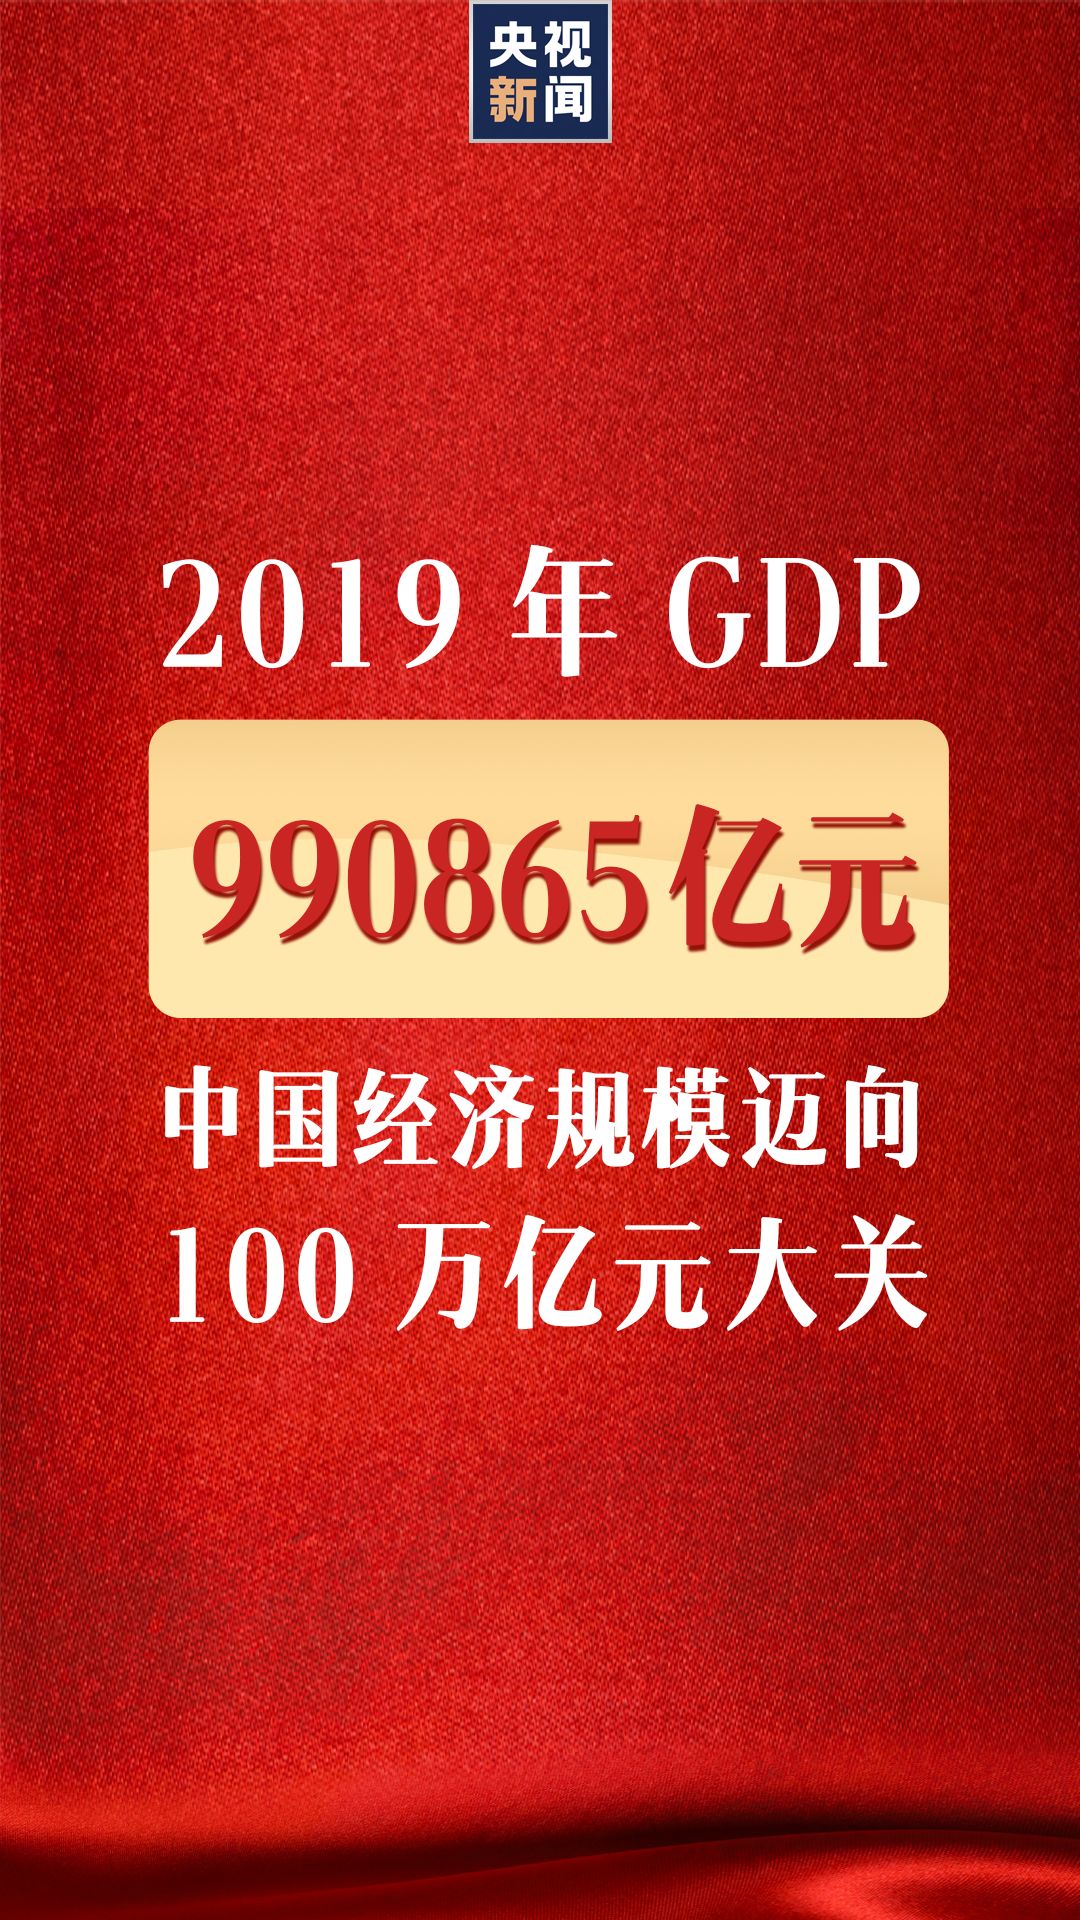 中国人均GDP突破1万美元